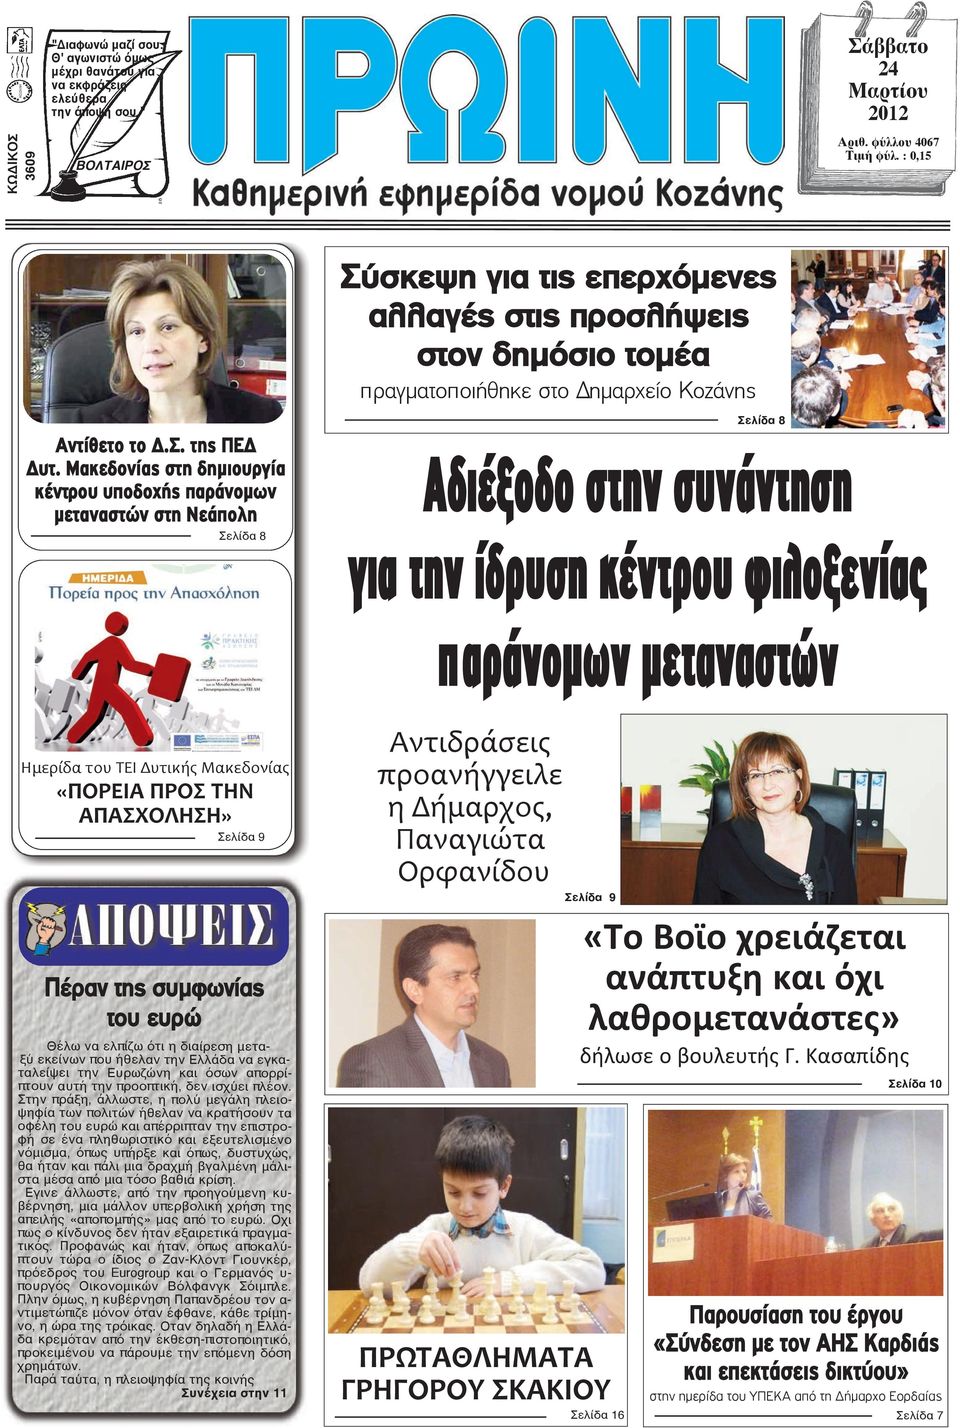 Σελίδα 8 Αδιέξοδο στην συνάντηση για την ίδρυση κέντρου φιλοξενίας παράνοµων µεταναστών Ημερίδα του ΤΕΙ Δυτικής Μακεδονίας «ΠΟΡΕΙΑ ΠΡΟΣ ΤΗΝ ΑΠΑΣΧΟΛΗΣΗ» Σελίδα 9 Πέραν της συμφωνίας του ευρώ Θέλω να